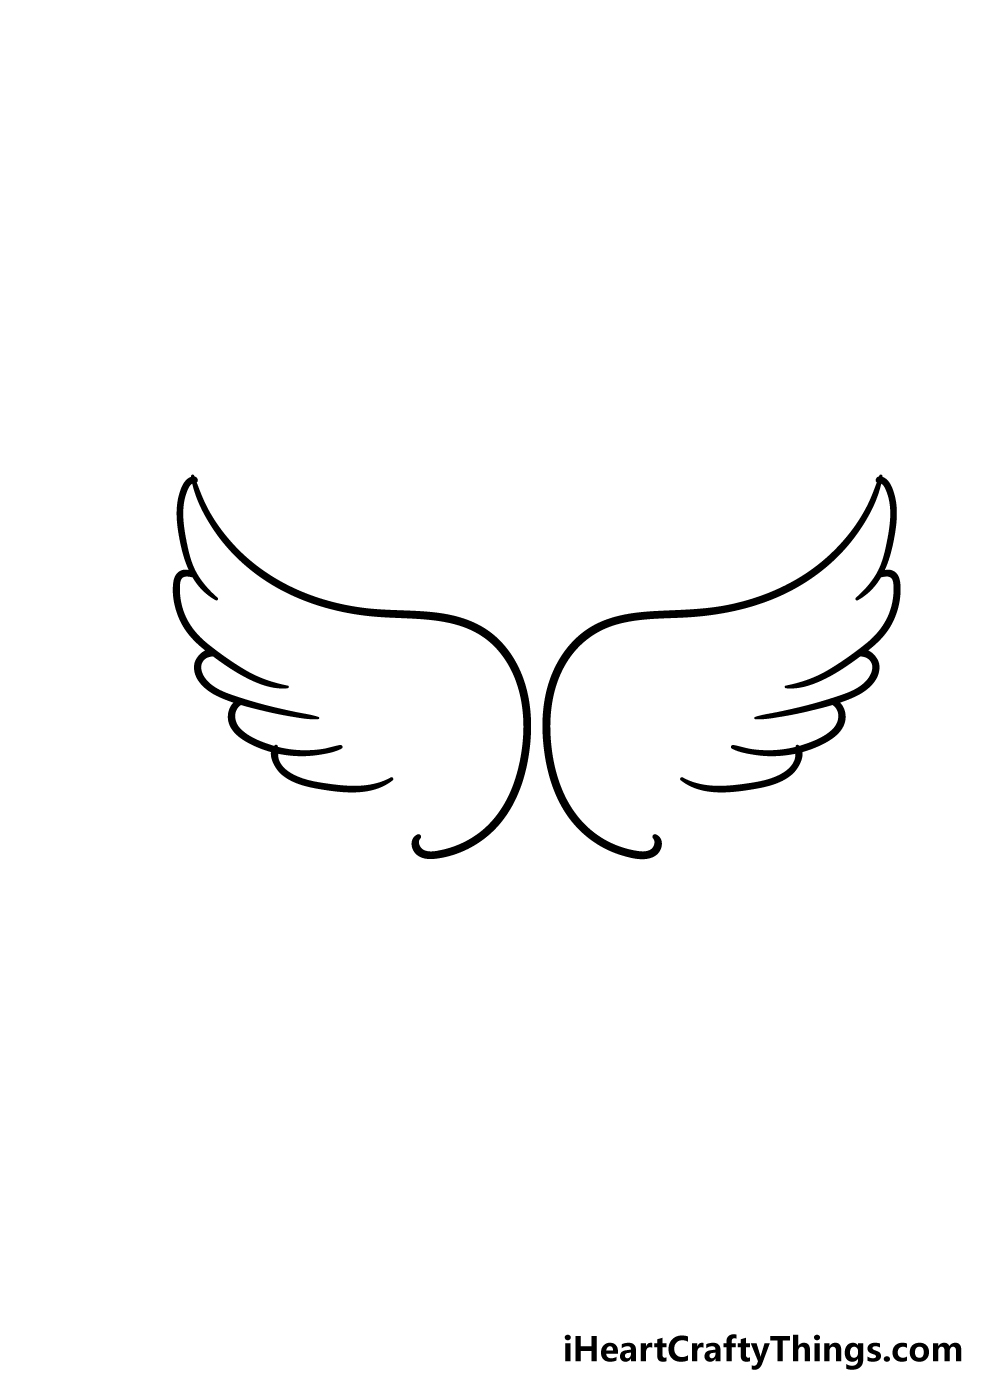 Angel Wings Easy To Draw - KibrisPDR